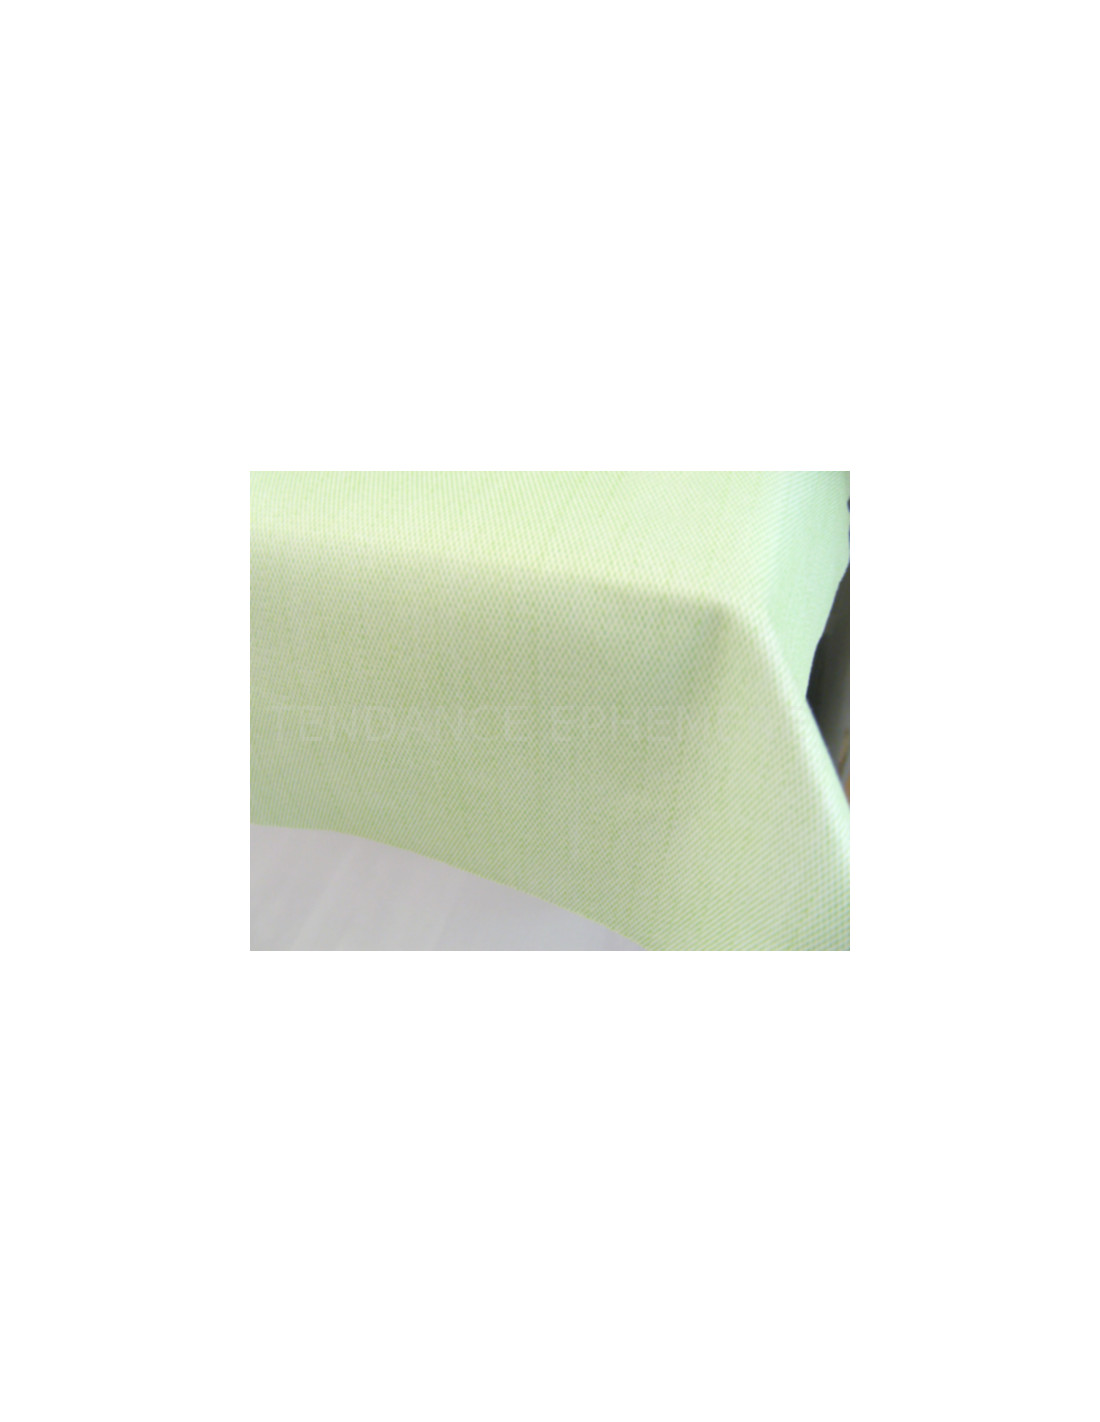 Rouleau nappe effet tissus vert d'eau (5m) - Déco tendance